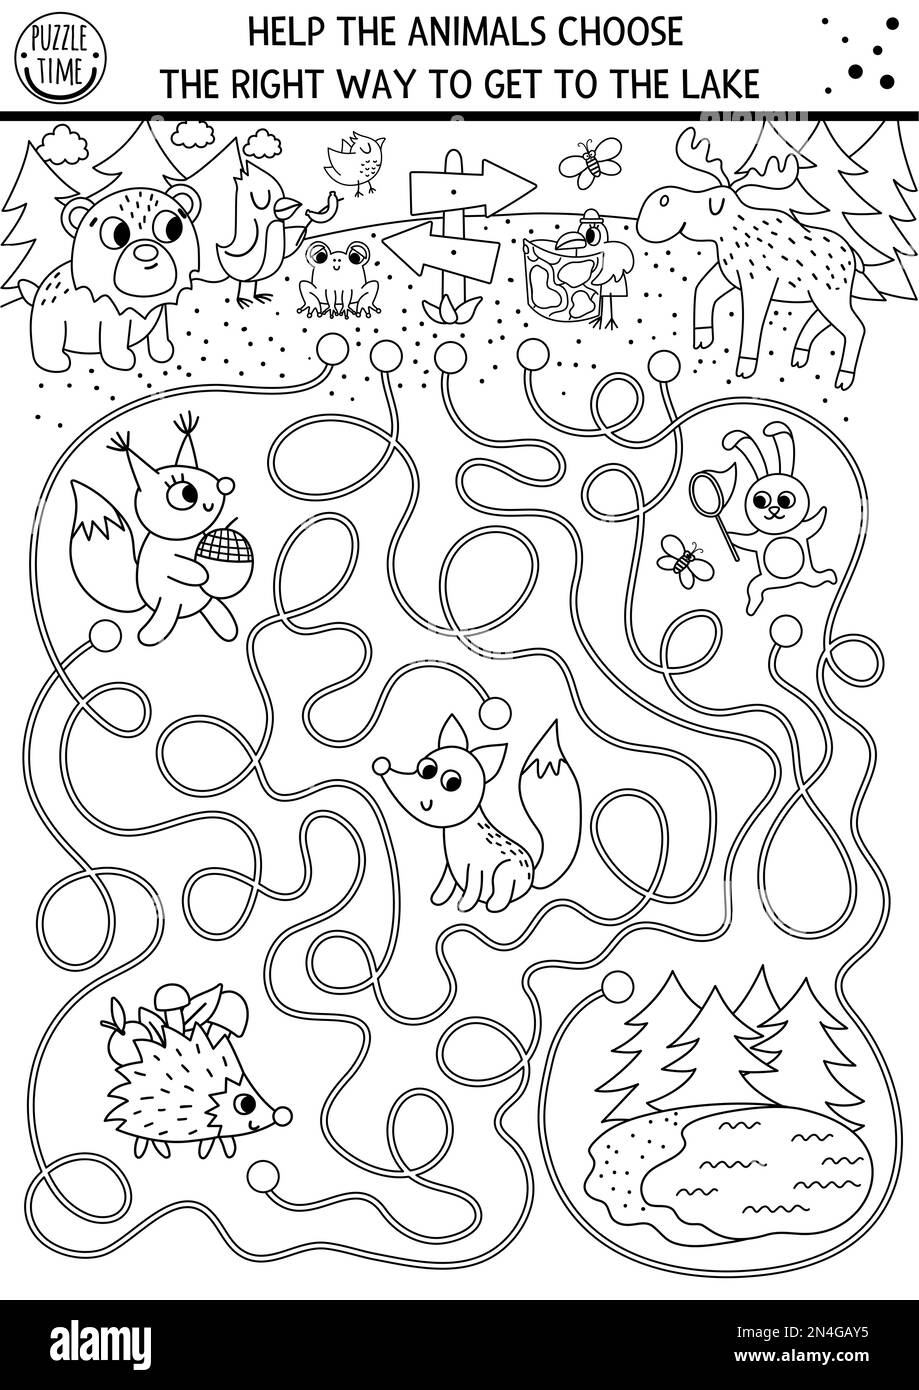 Schwarz-weißes Sommerlager-Labyrinth für Kinder. Die aktiven Feiertage zeigen die druckbaren Aktivitäten für Vorschulkinder. Familienausflug in die Natur – Labyrinth oder Malkunst Stock Vektor